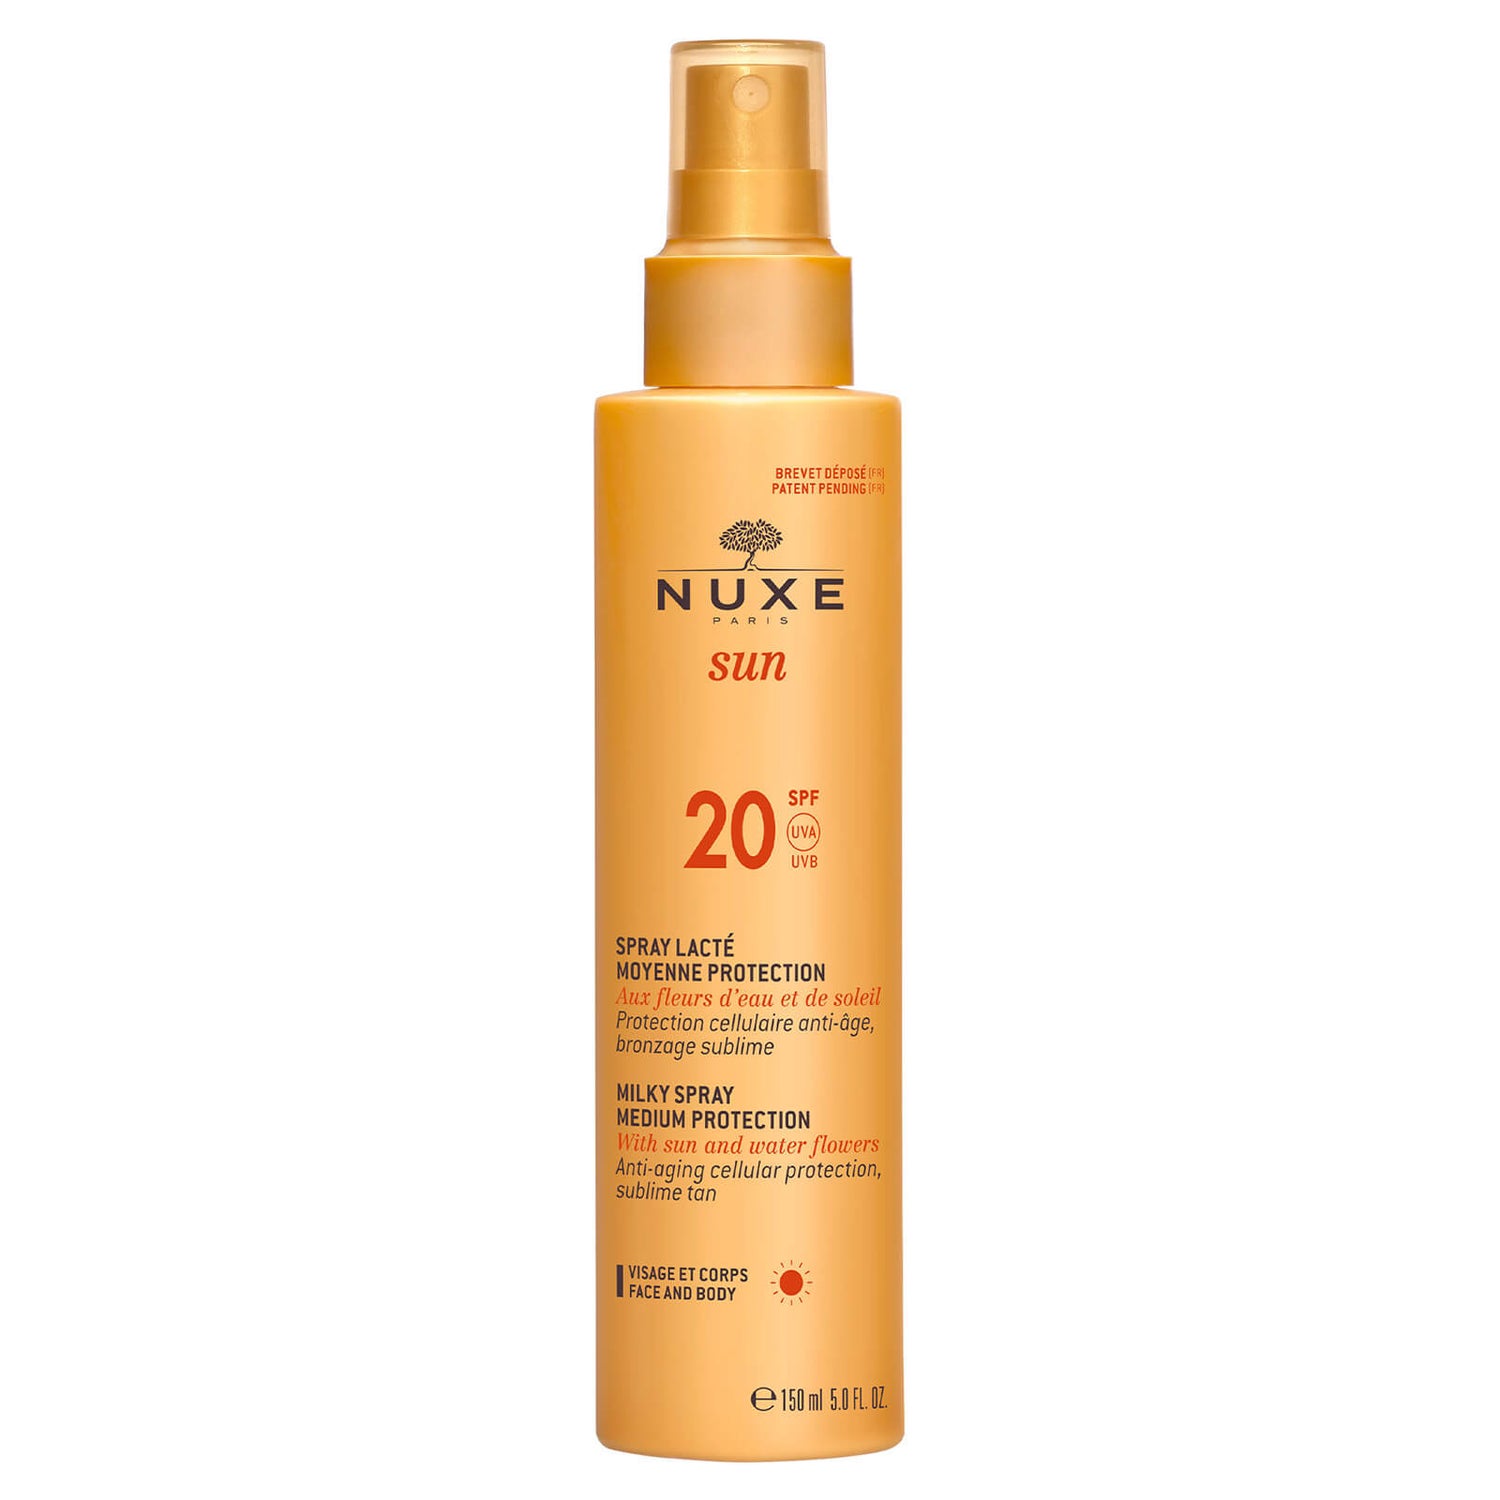 NUXE Sun Milky Spray Face and Body SPF 20 (150 ml) - Exclusive